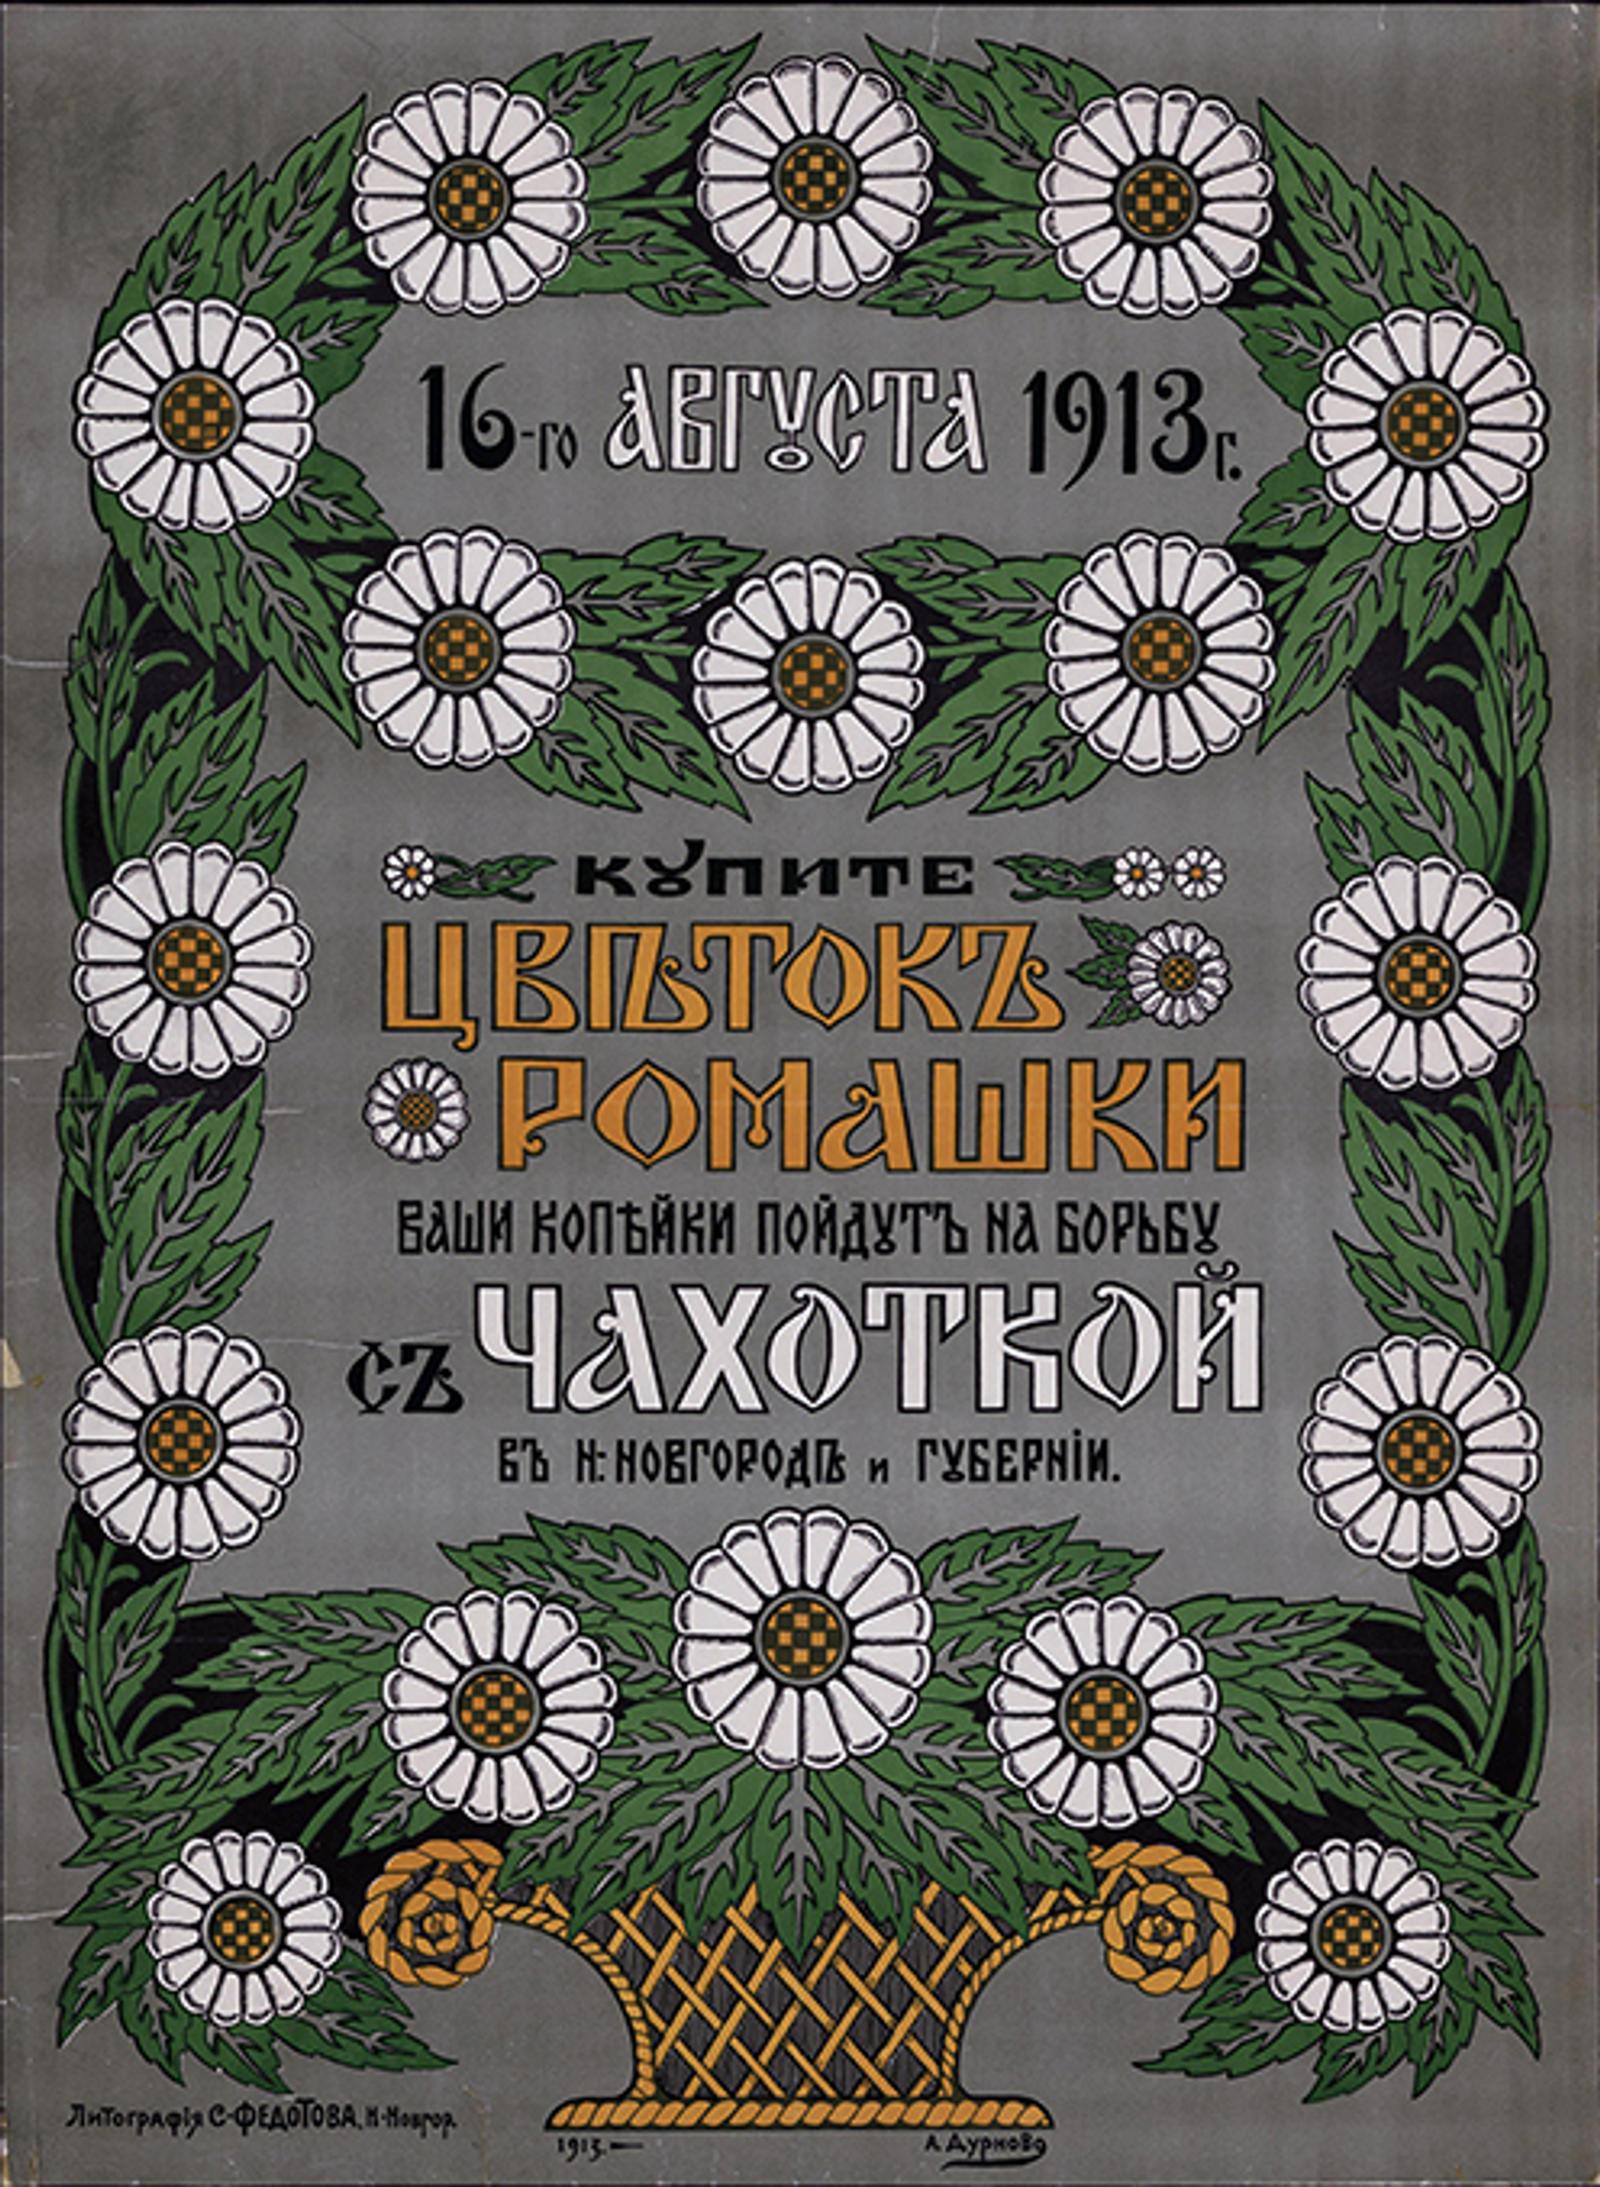 Изображение книги 16-го августа 1913 года. Купите цветок ромашки